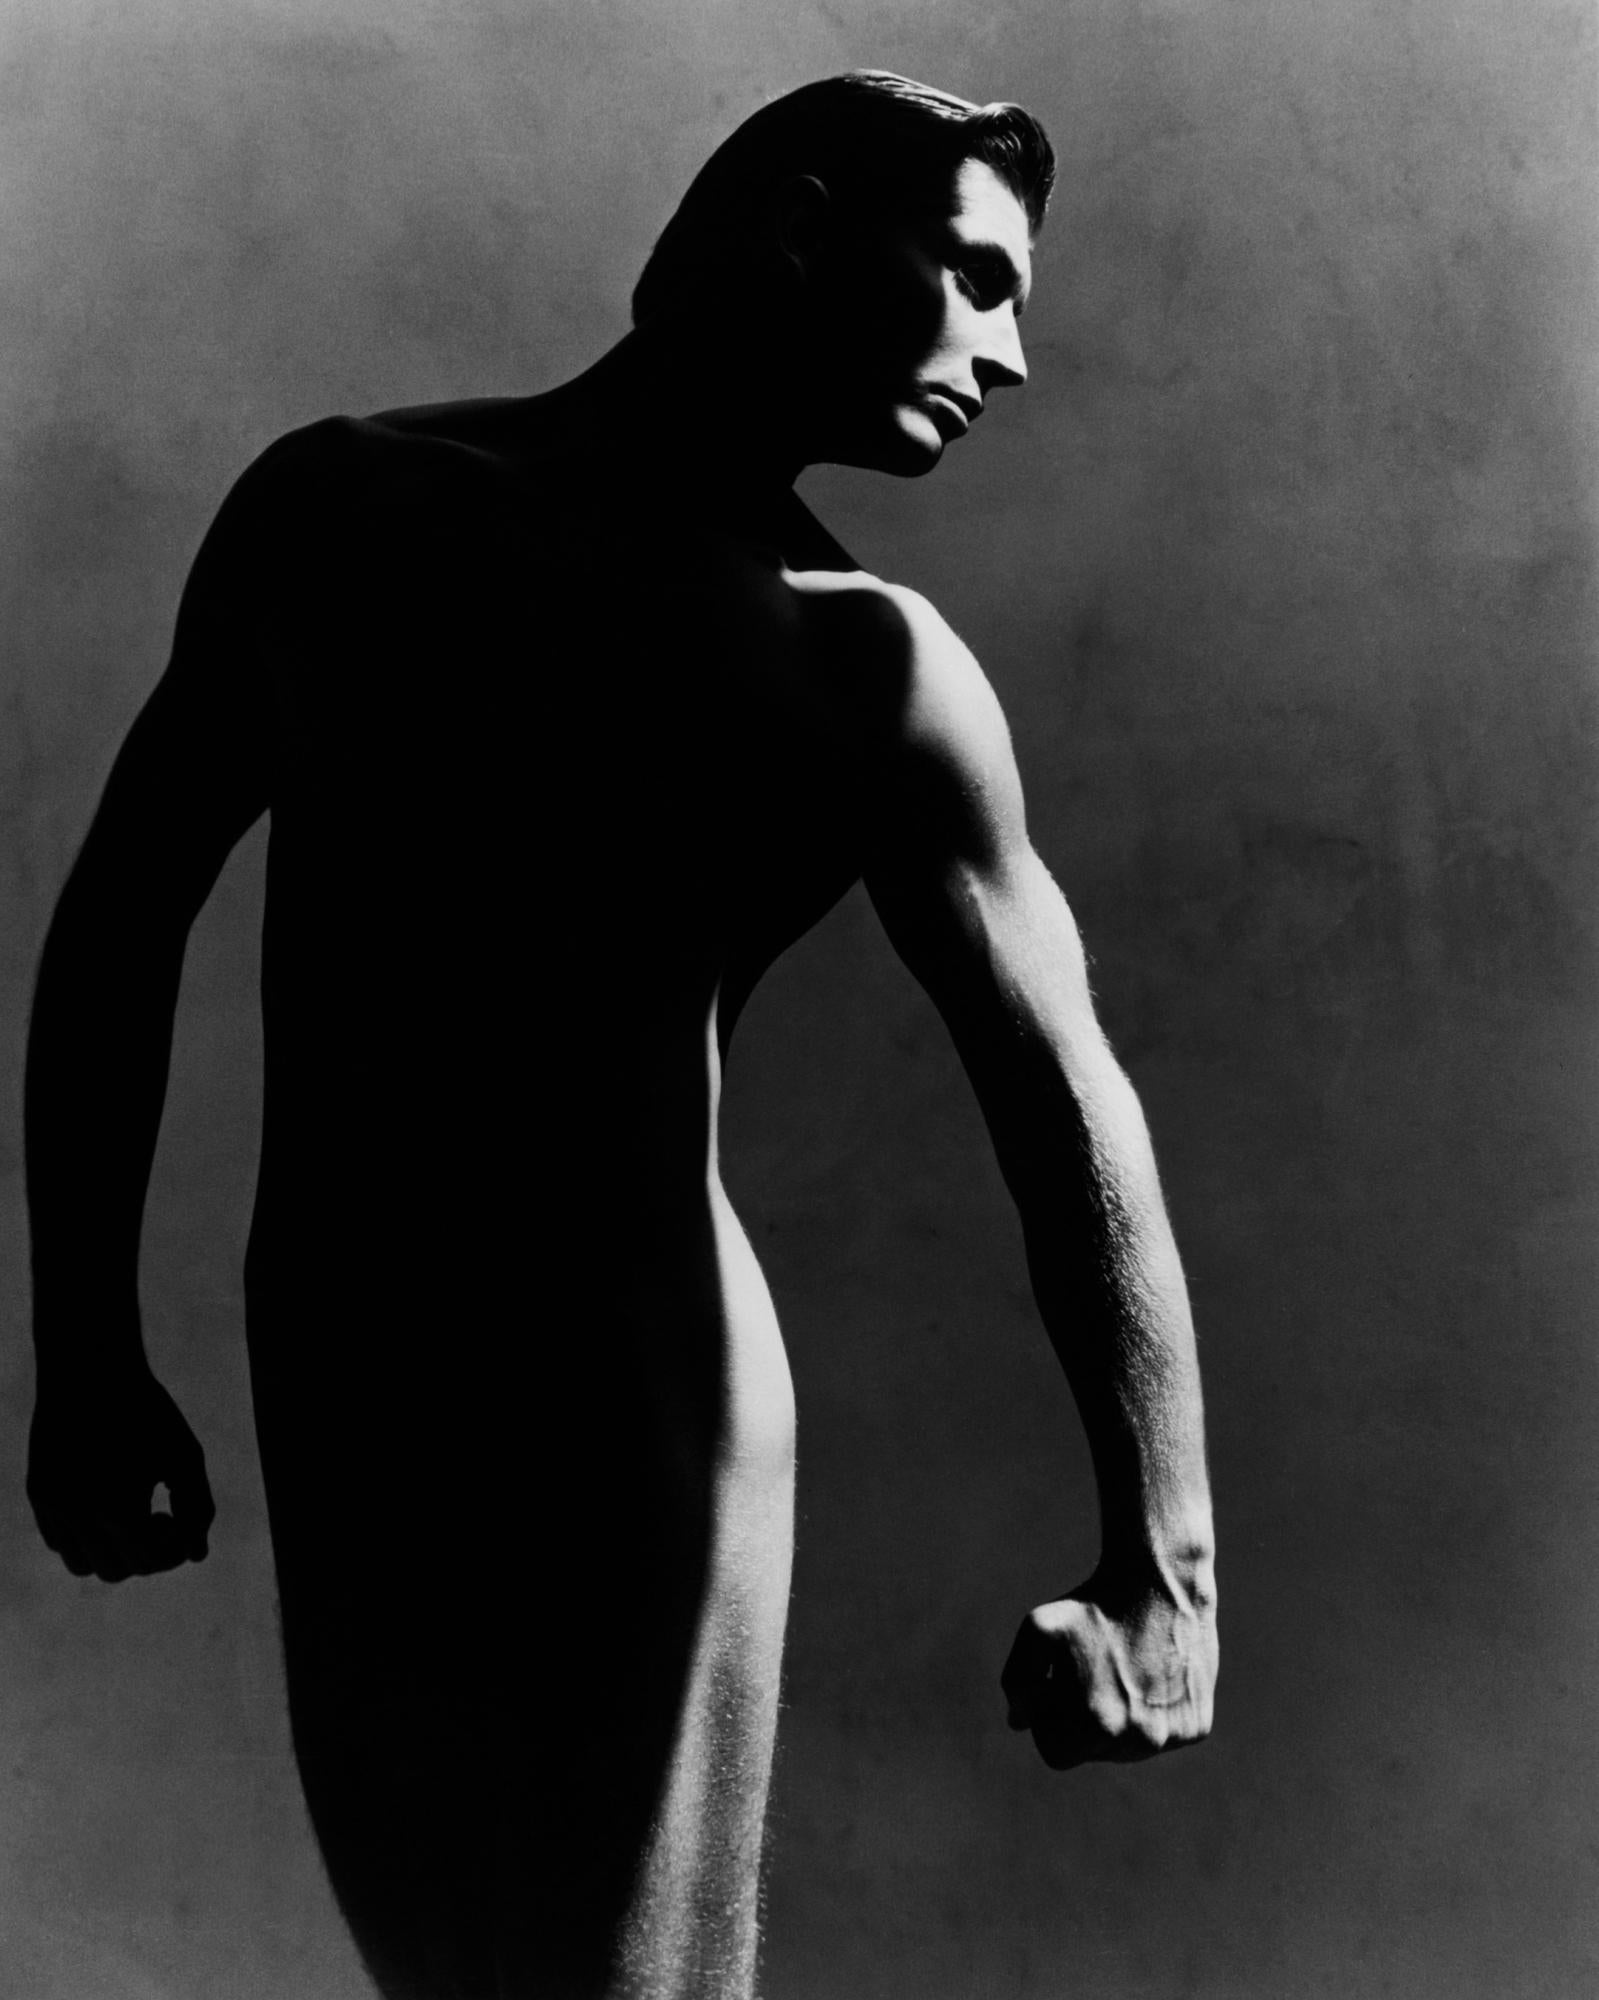 Greg Gorman Portrait Photograph – Chris Harris, Los Angeles, 21. Jahrhundert, Zeitgenössisch, Celebrity, Fotografie